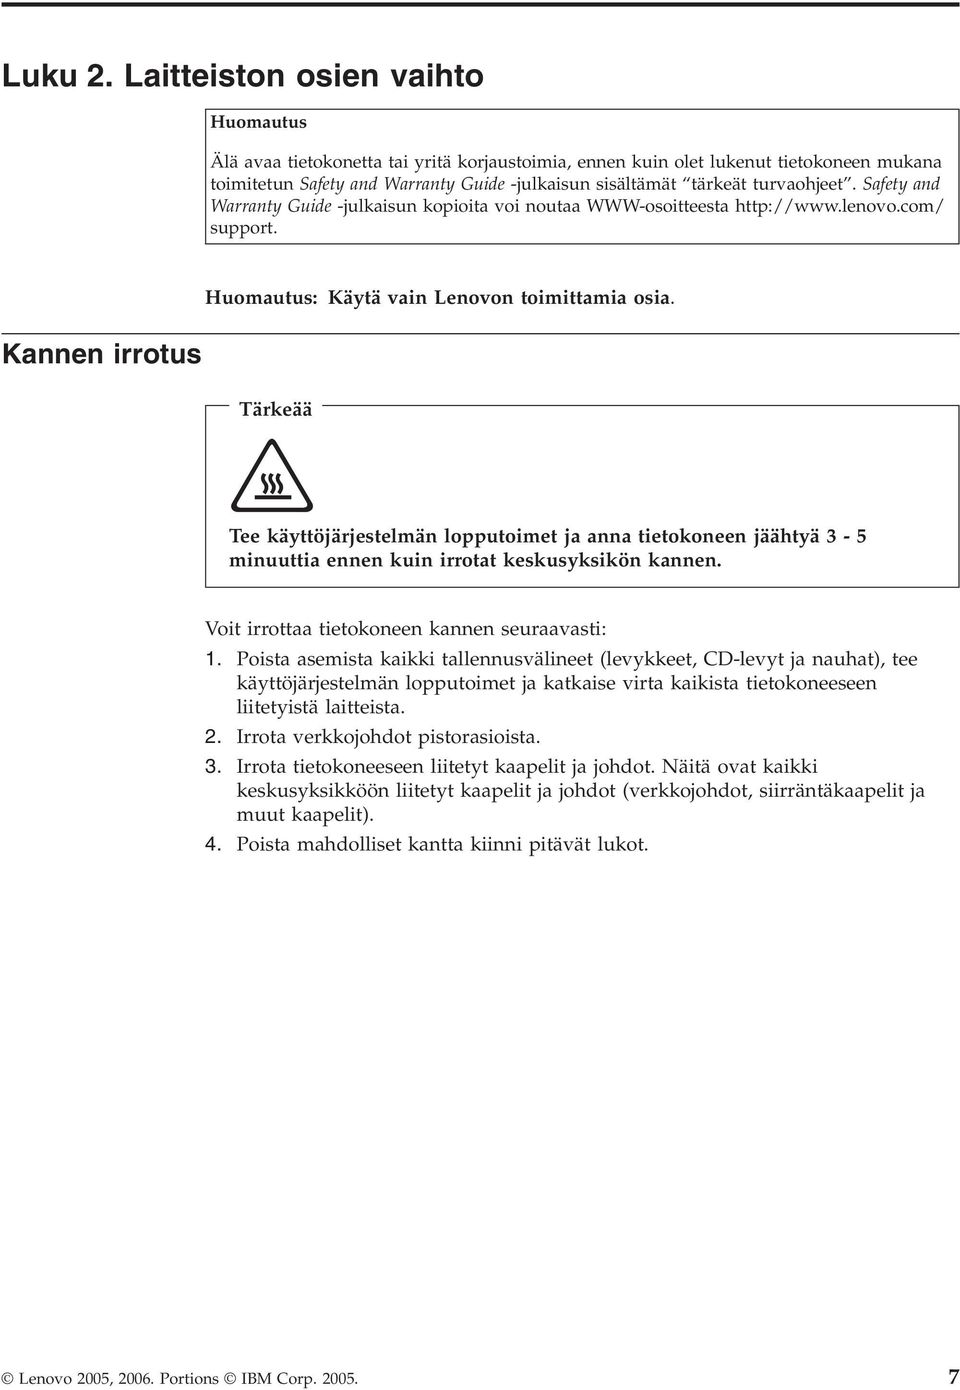 turvaohjeet. Safety and Warranty Guide -julkaisun kopioita voi noutaa WWW-osoitteesta http://www.lenovo.com/ support. Huomautus: Käytä vain Lenovon toimittamia osia.